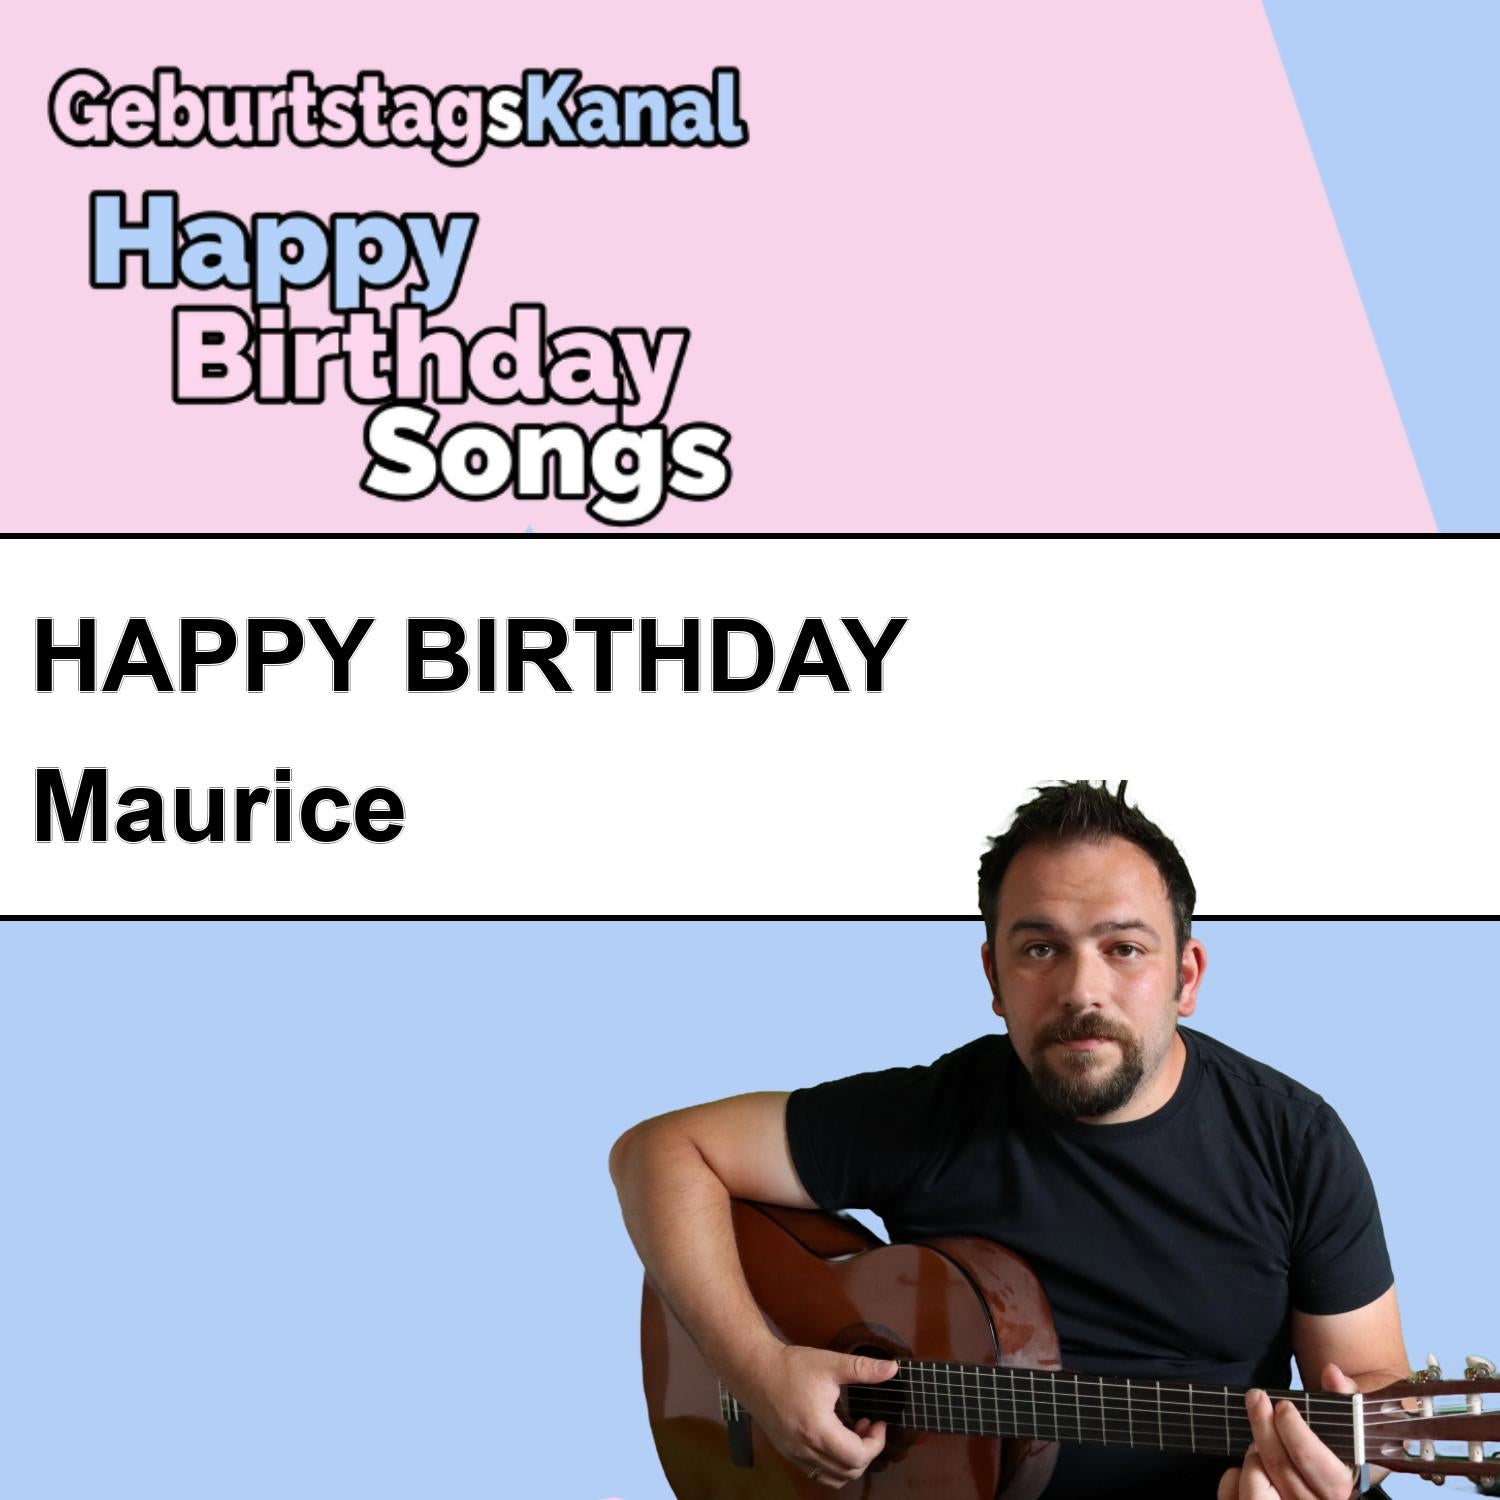 Produktbild Happy Birthday to you Maurice mit Wunschgrußbotschaft